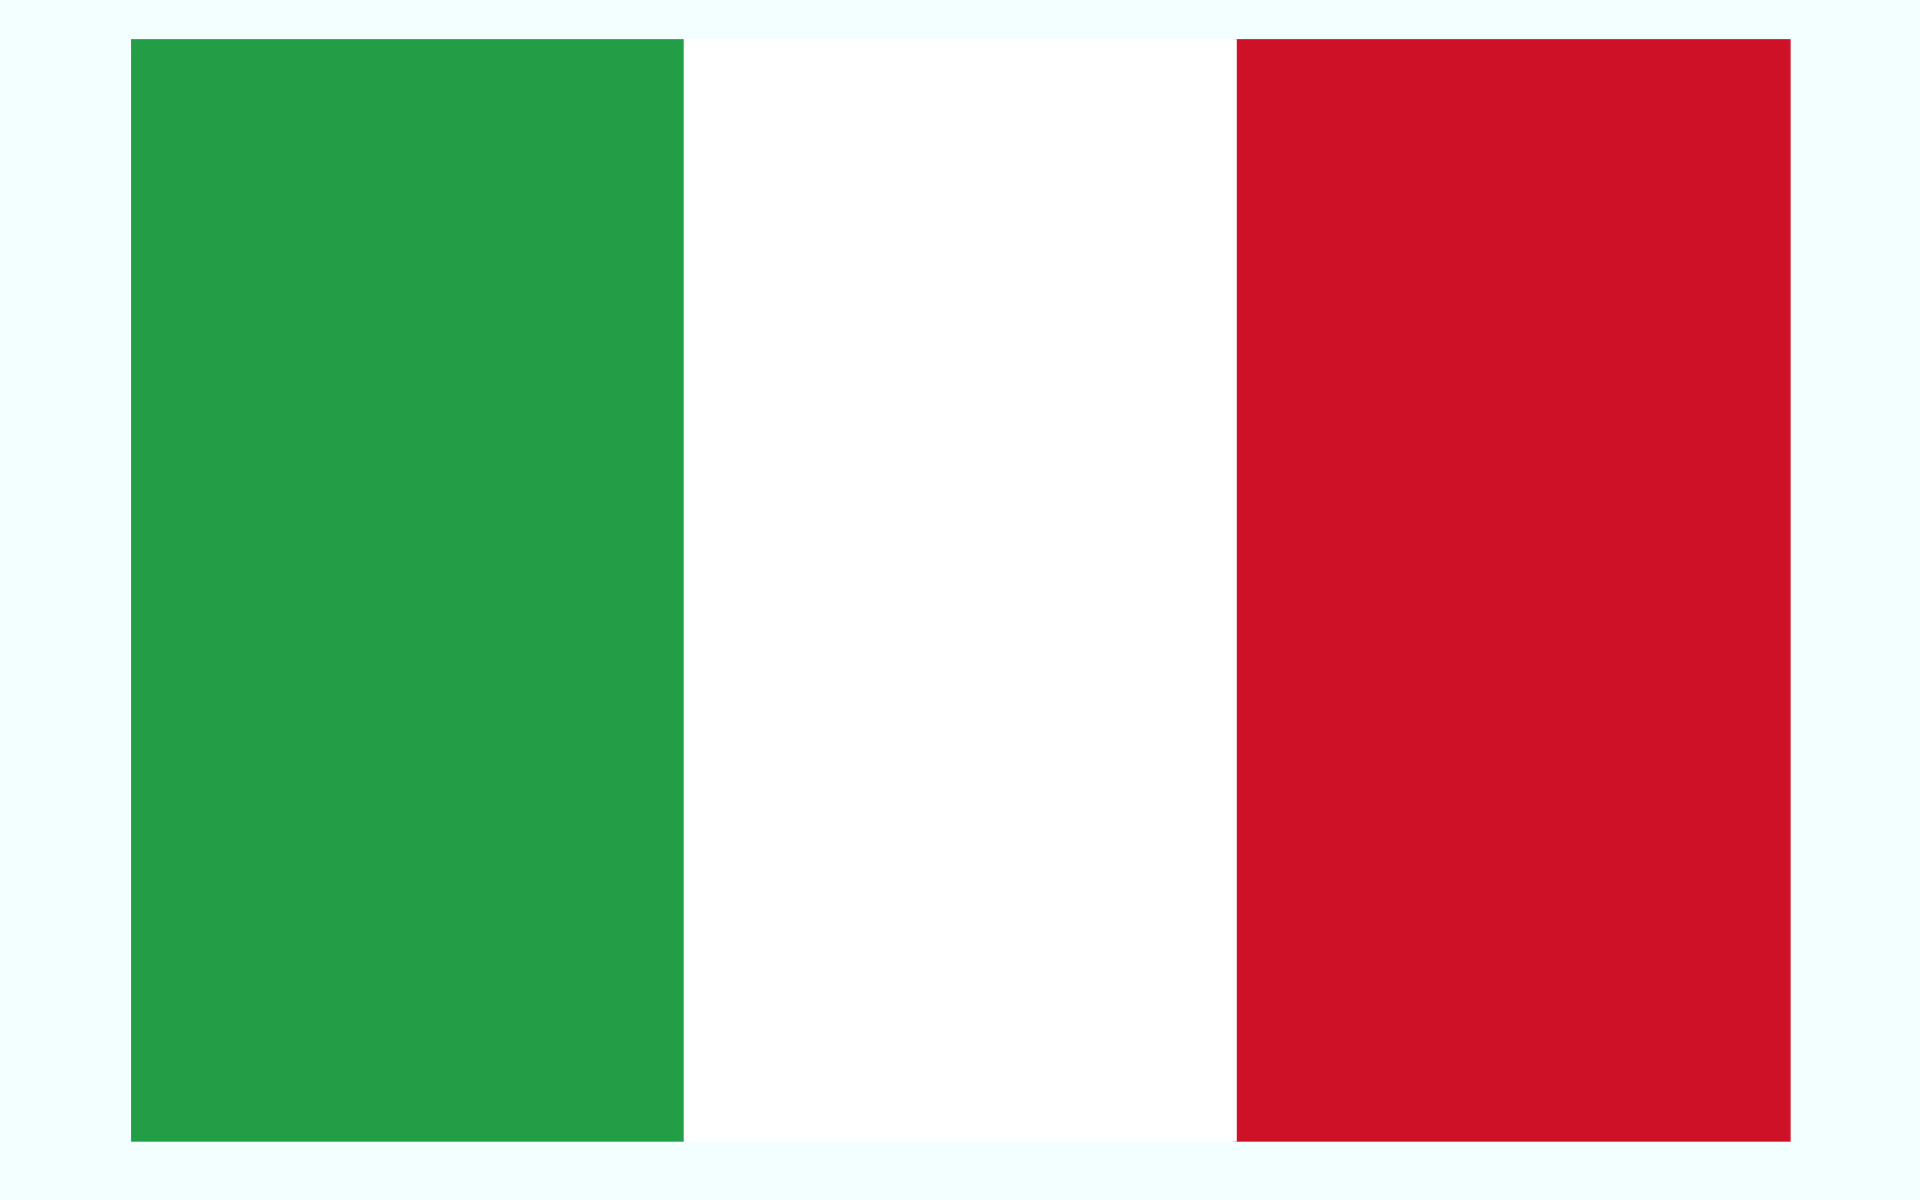 دانلود عکس پرچم کشور ایتالیا
